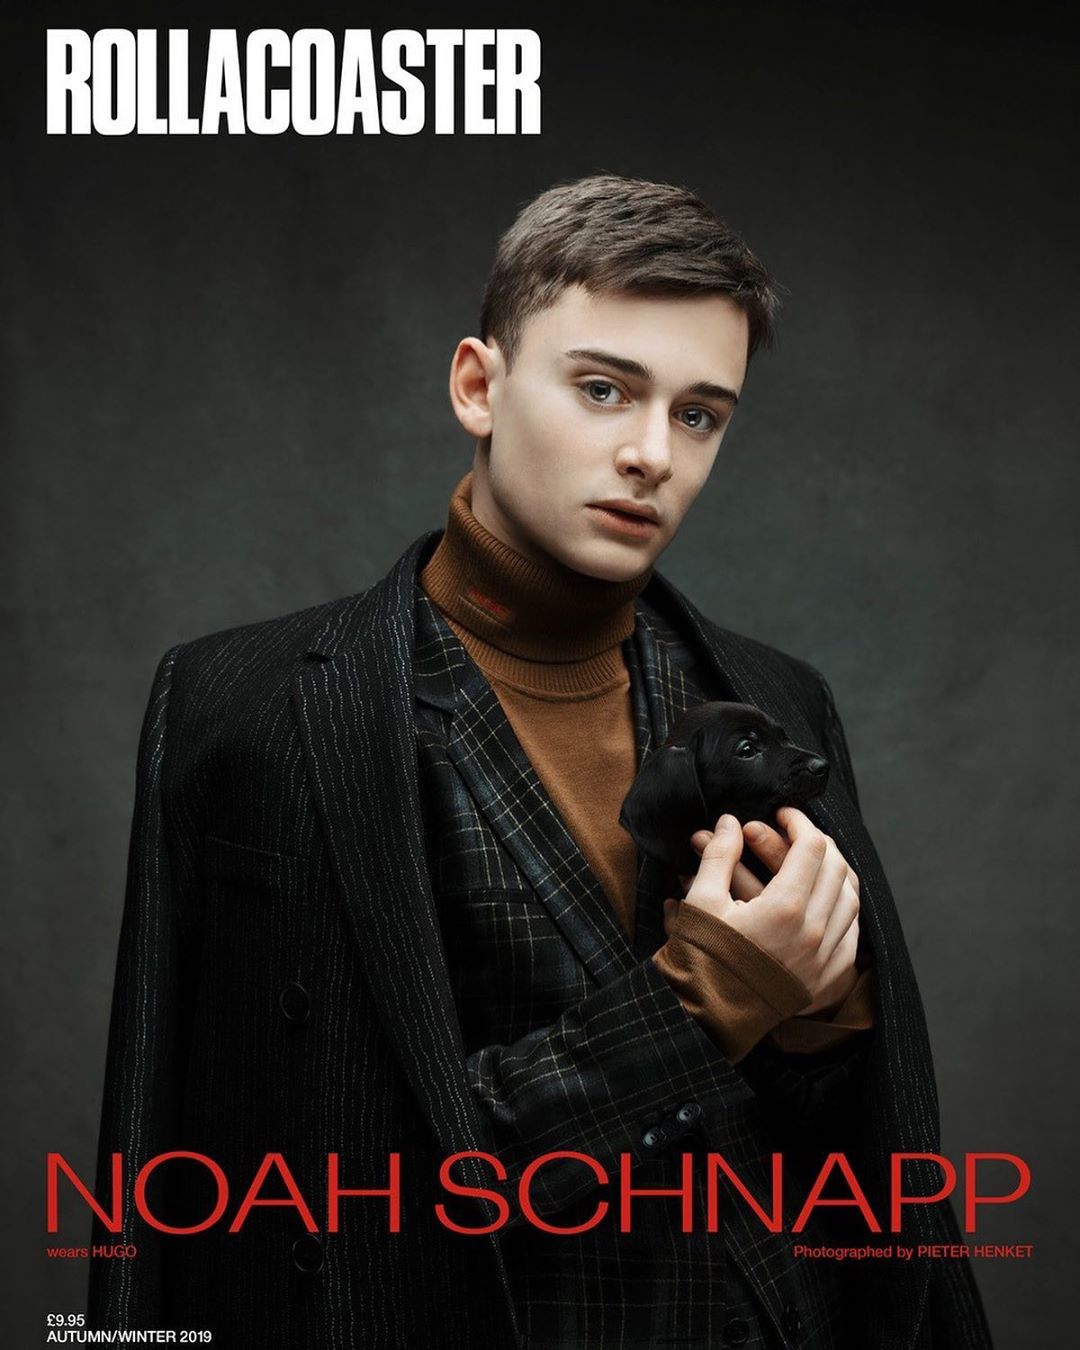 General photo of Noah Schnapp